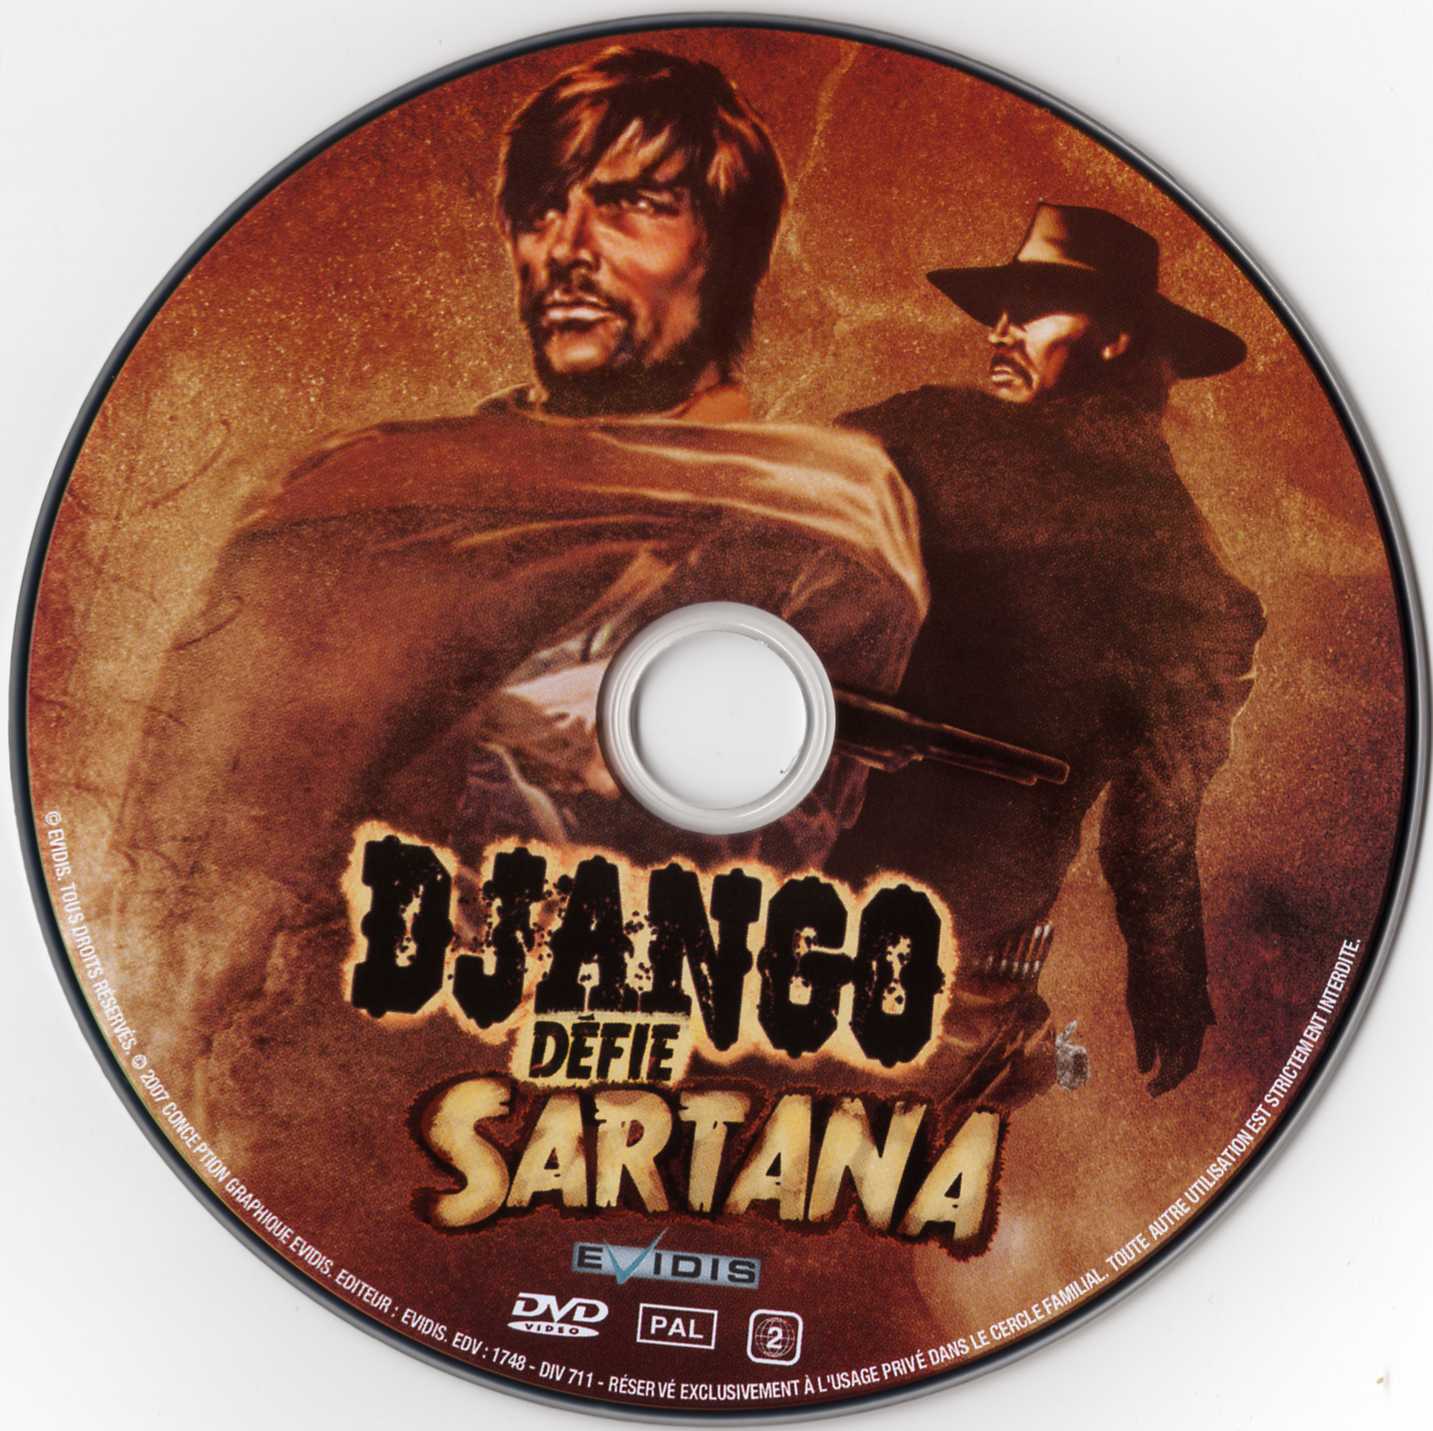 Django dfie Sartana